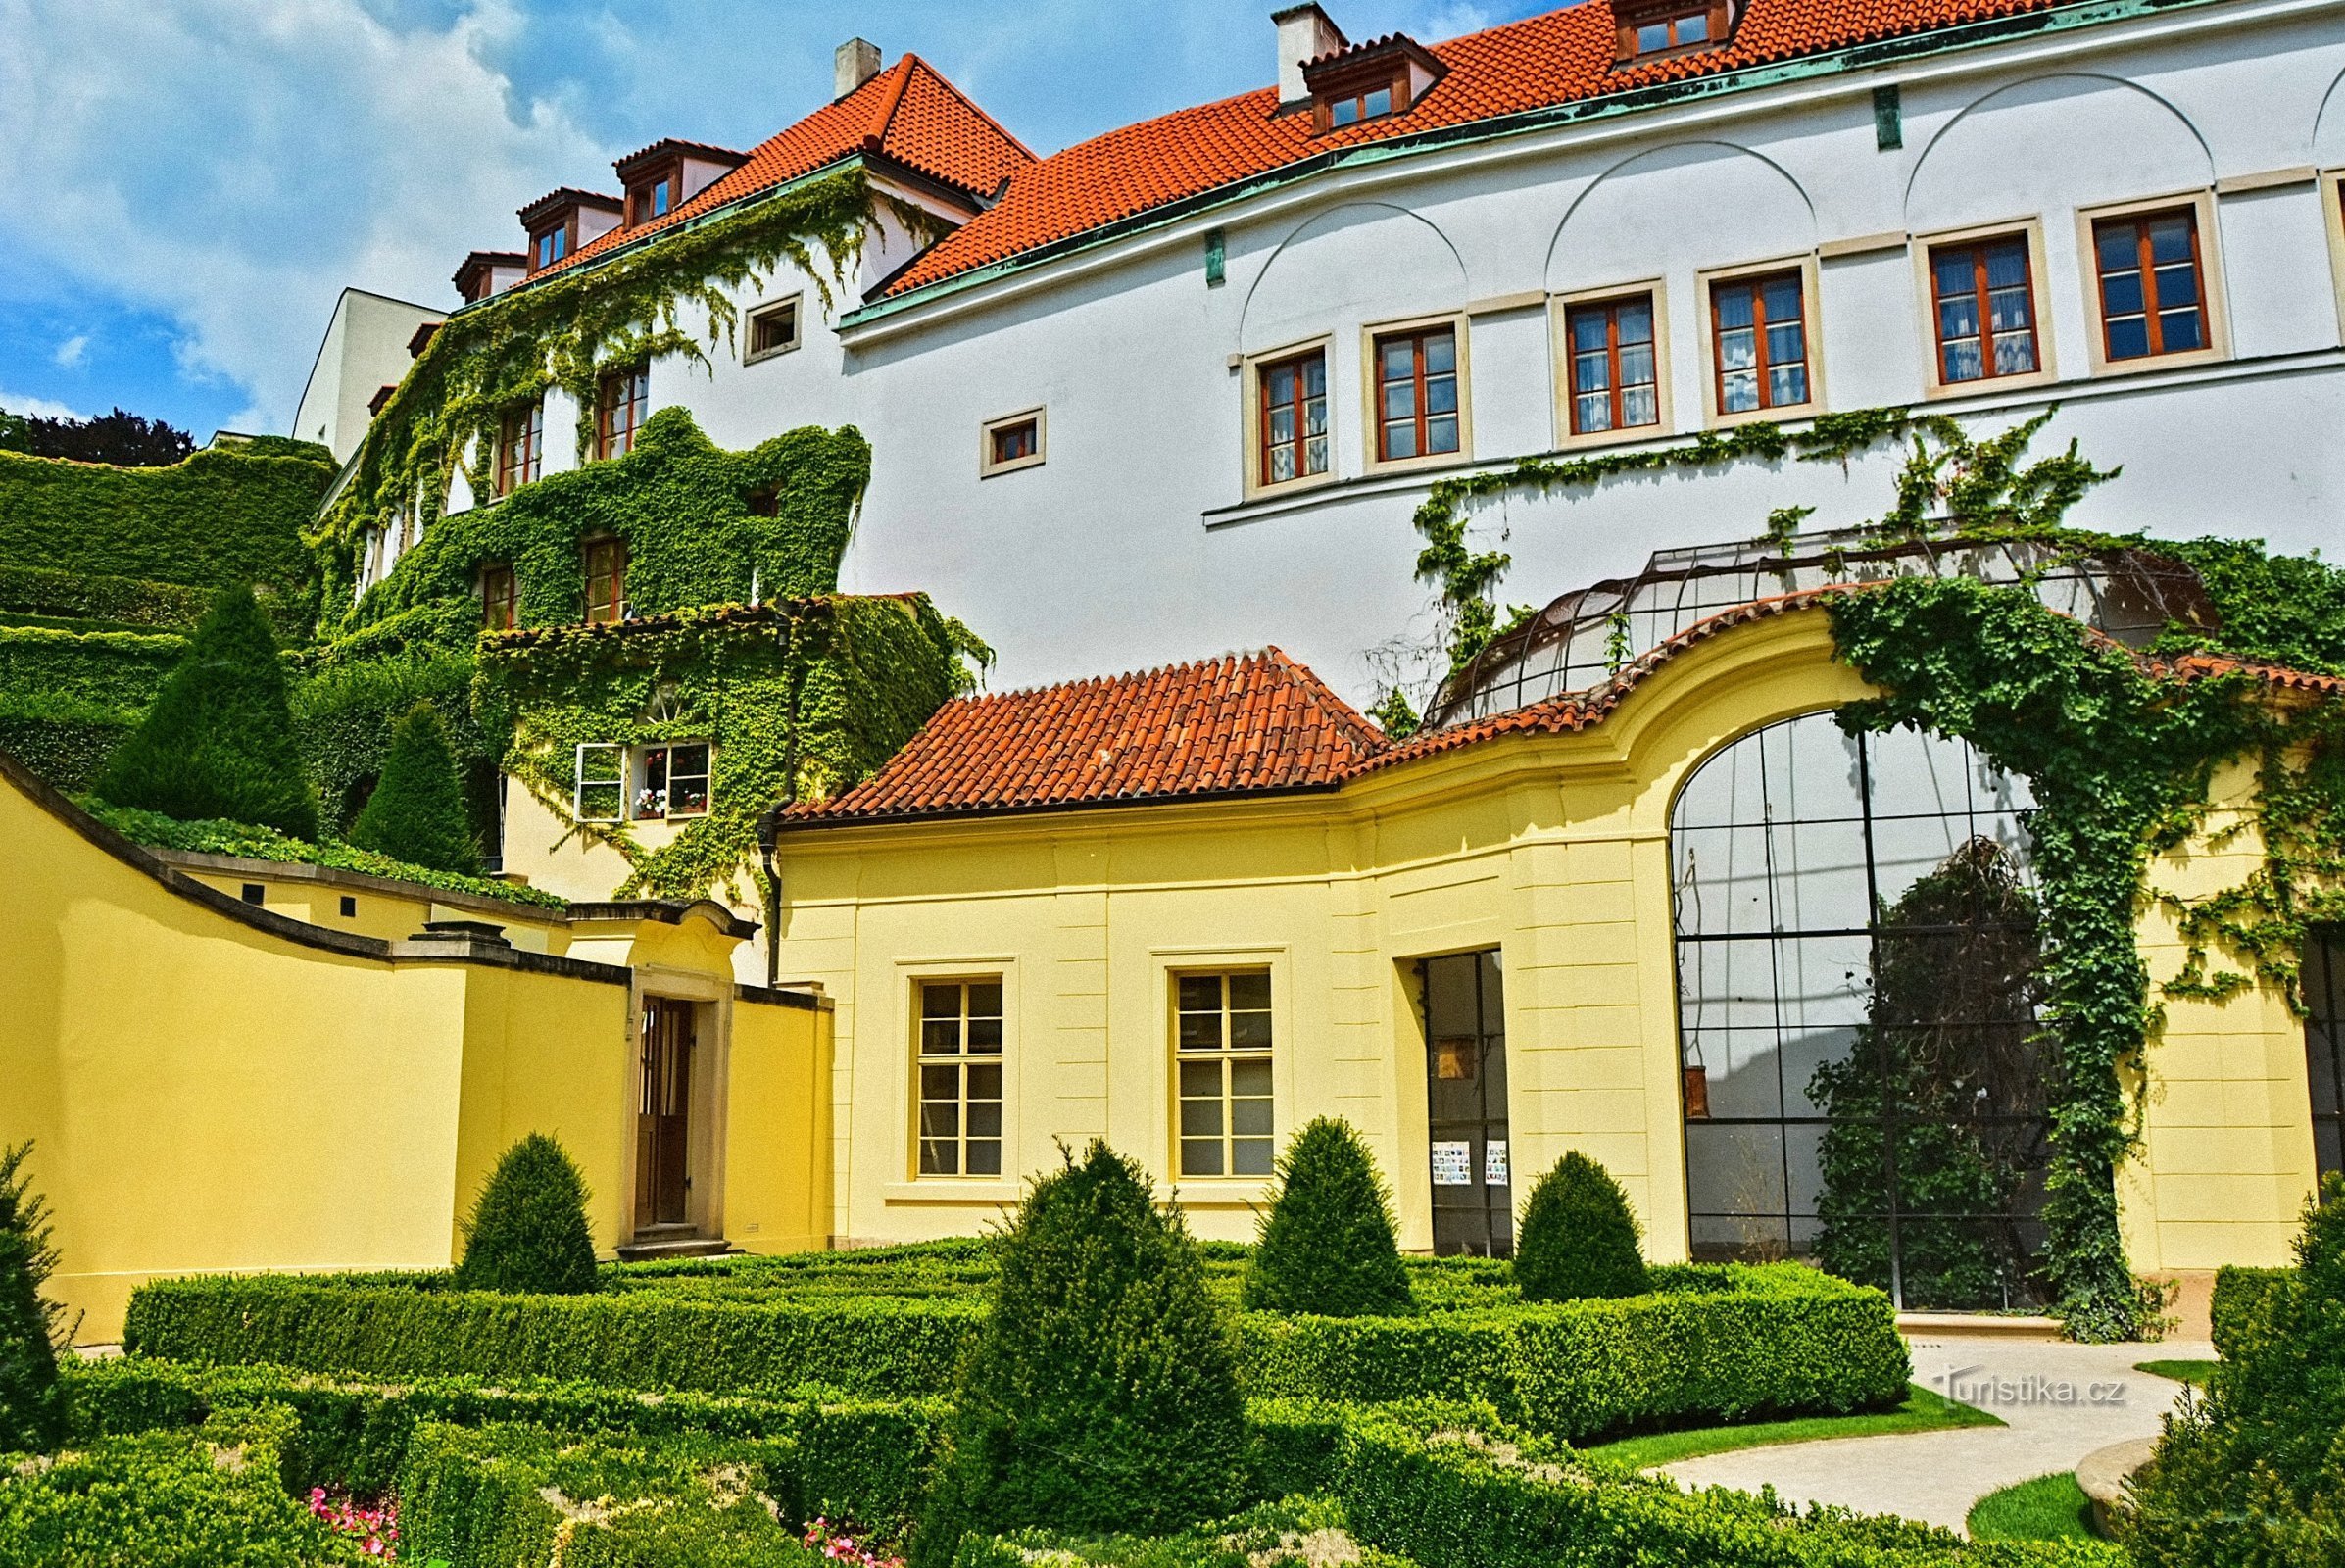 Jardim Vrtbovská com uma bela vista de Praga